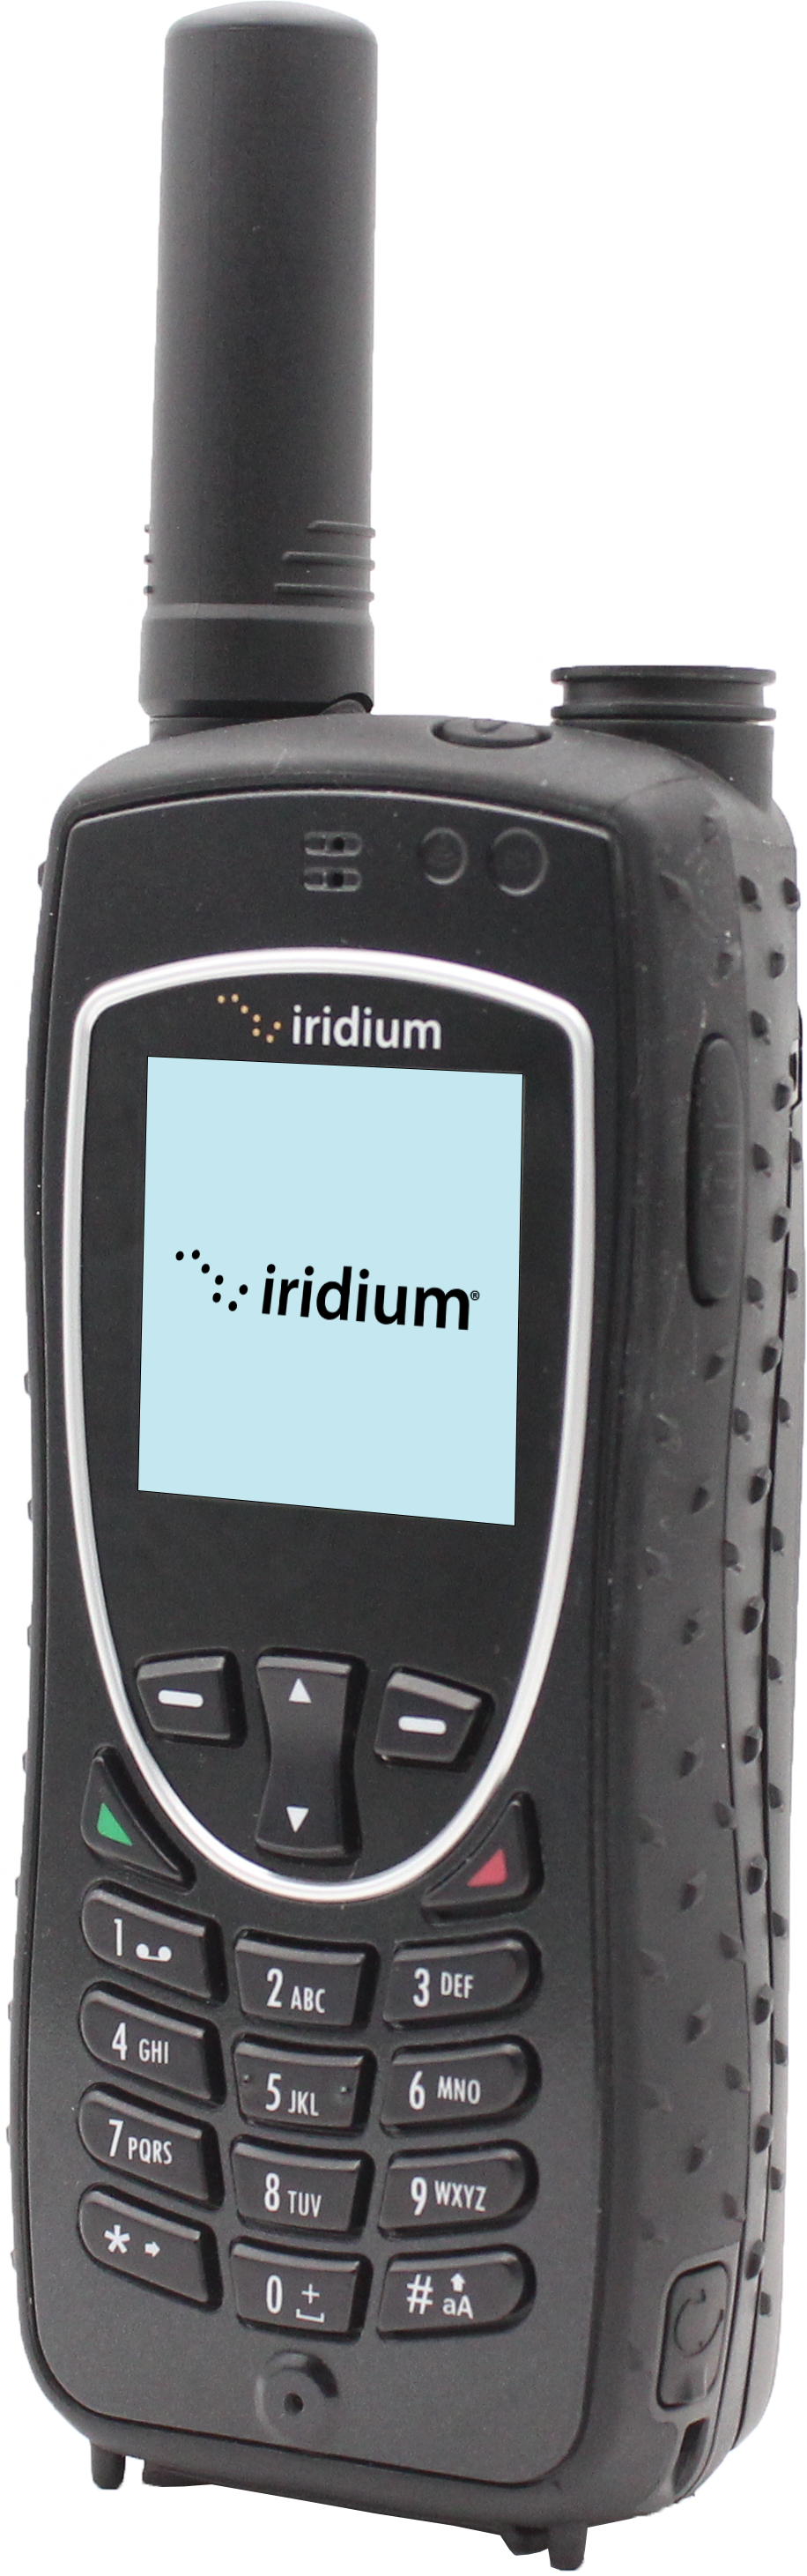 Iridium Extreme Product Image